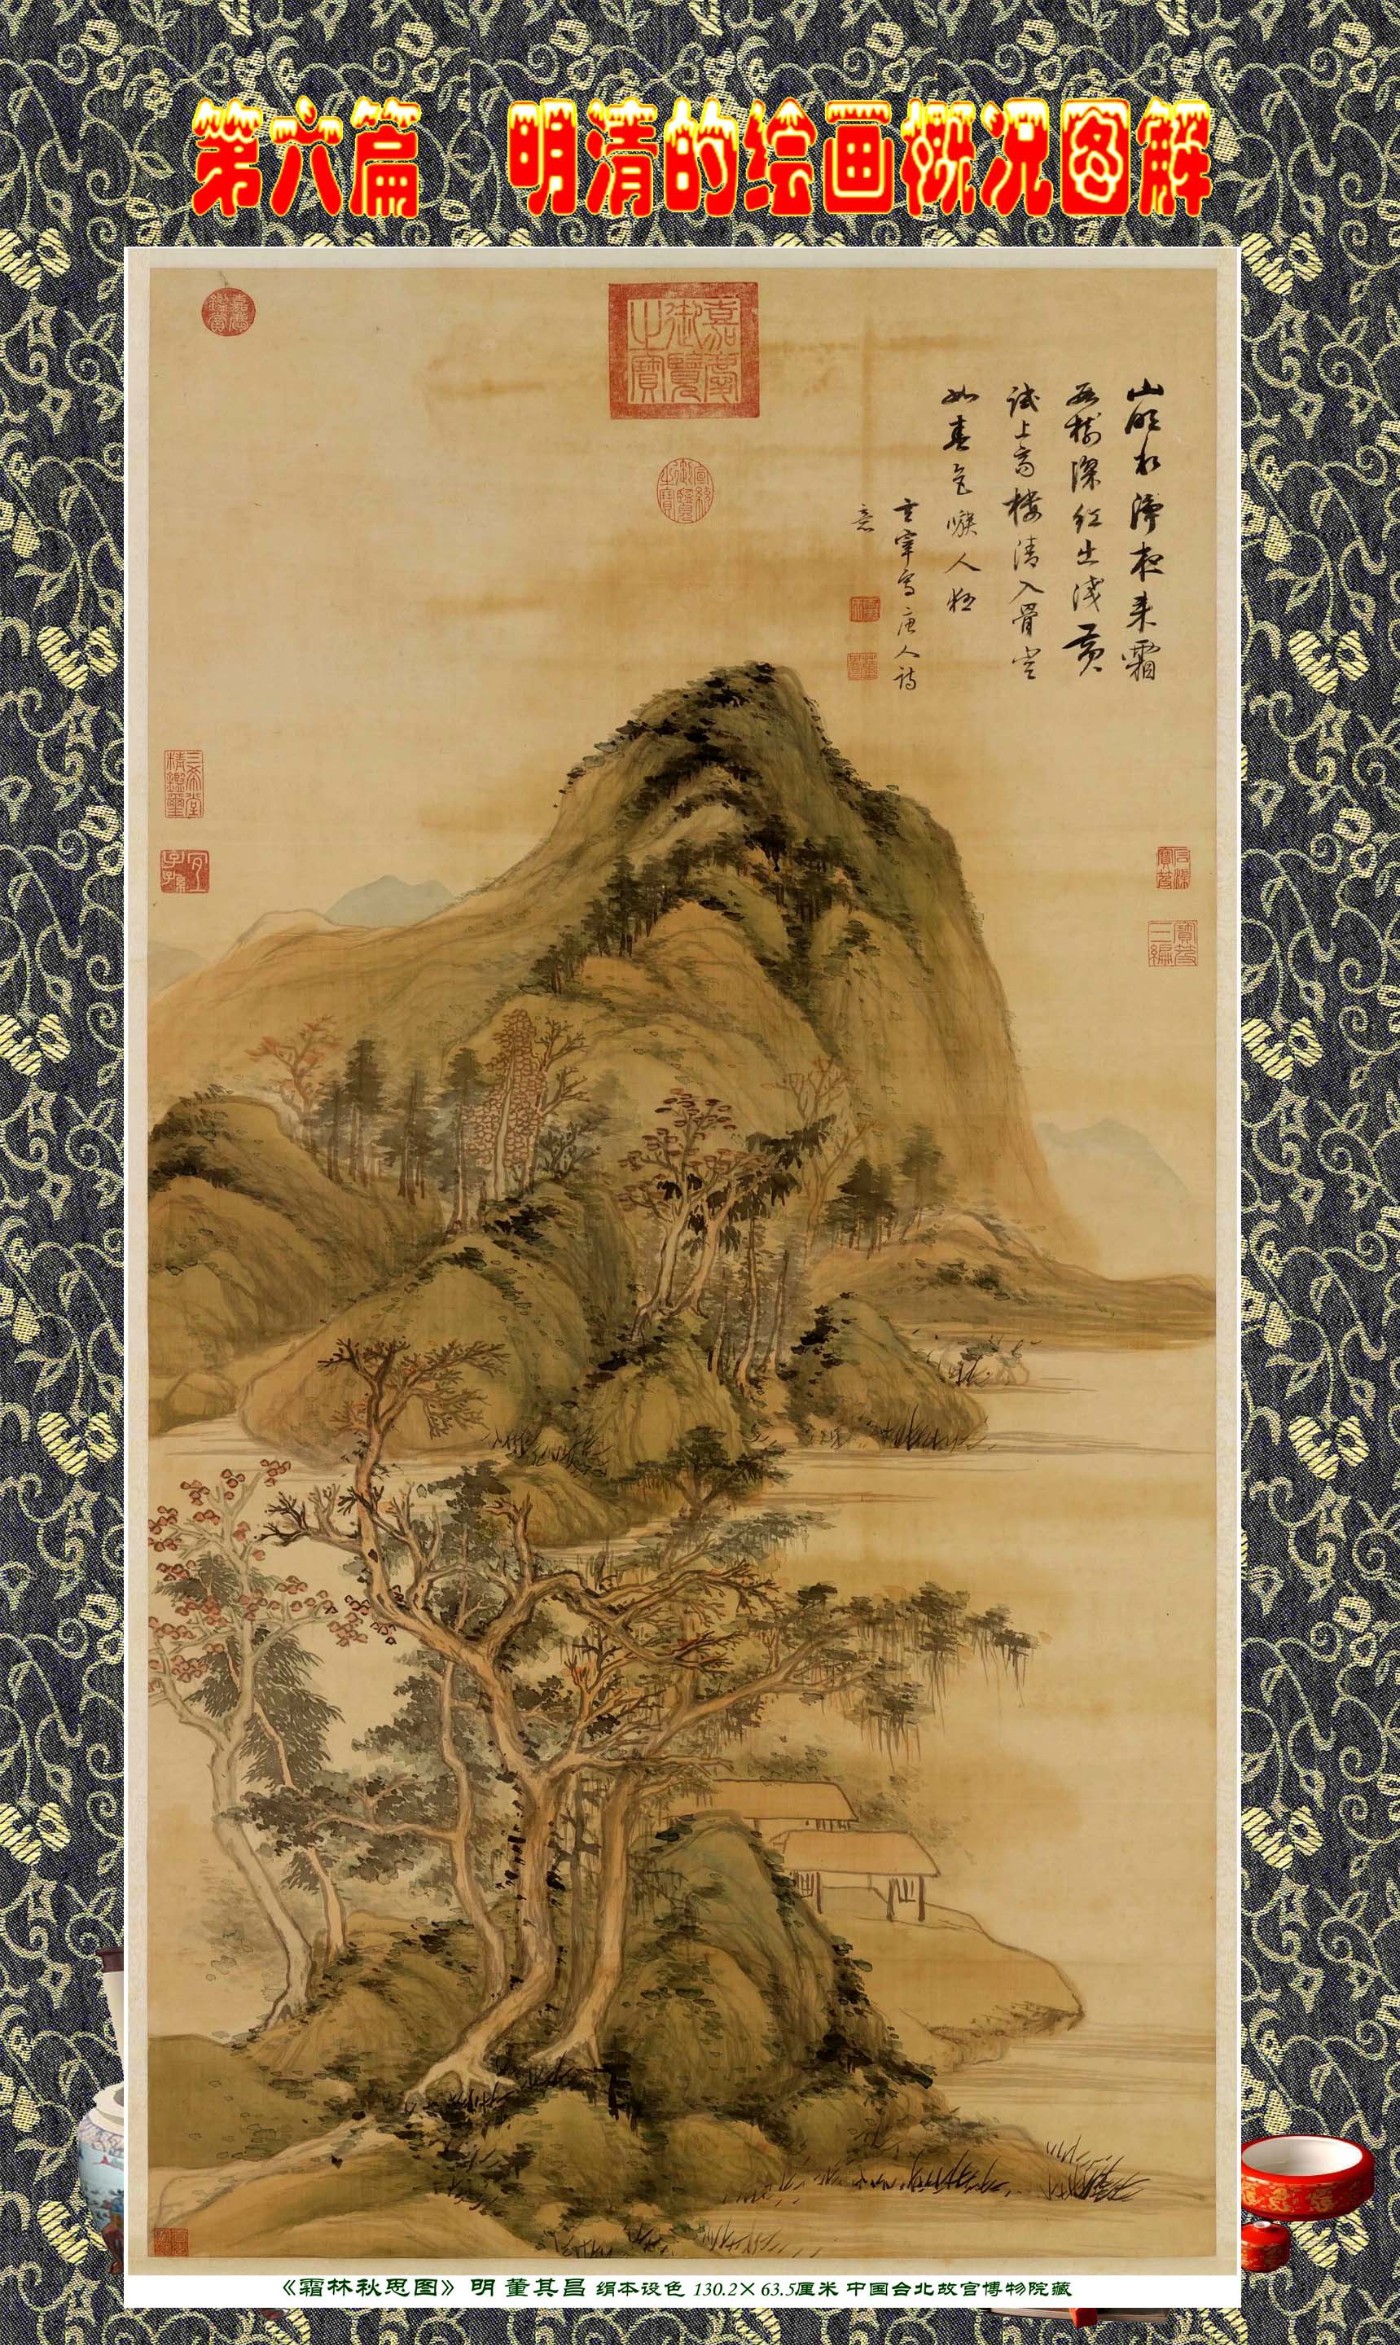 【激安銀座】nw2764〈王仁爵〉書「登華山落～」中国画 掛軸